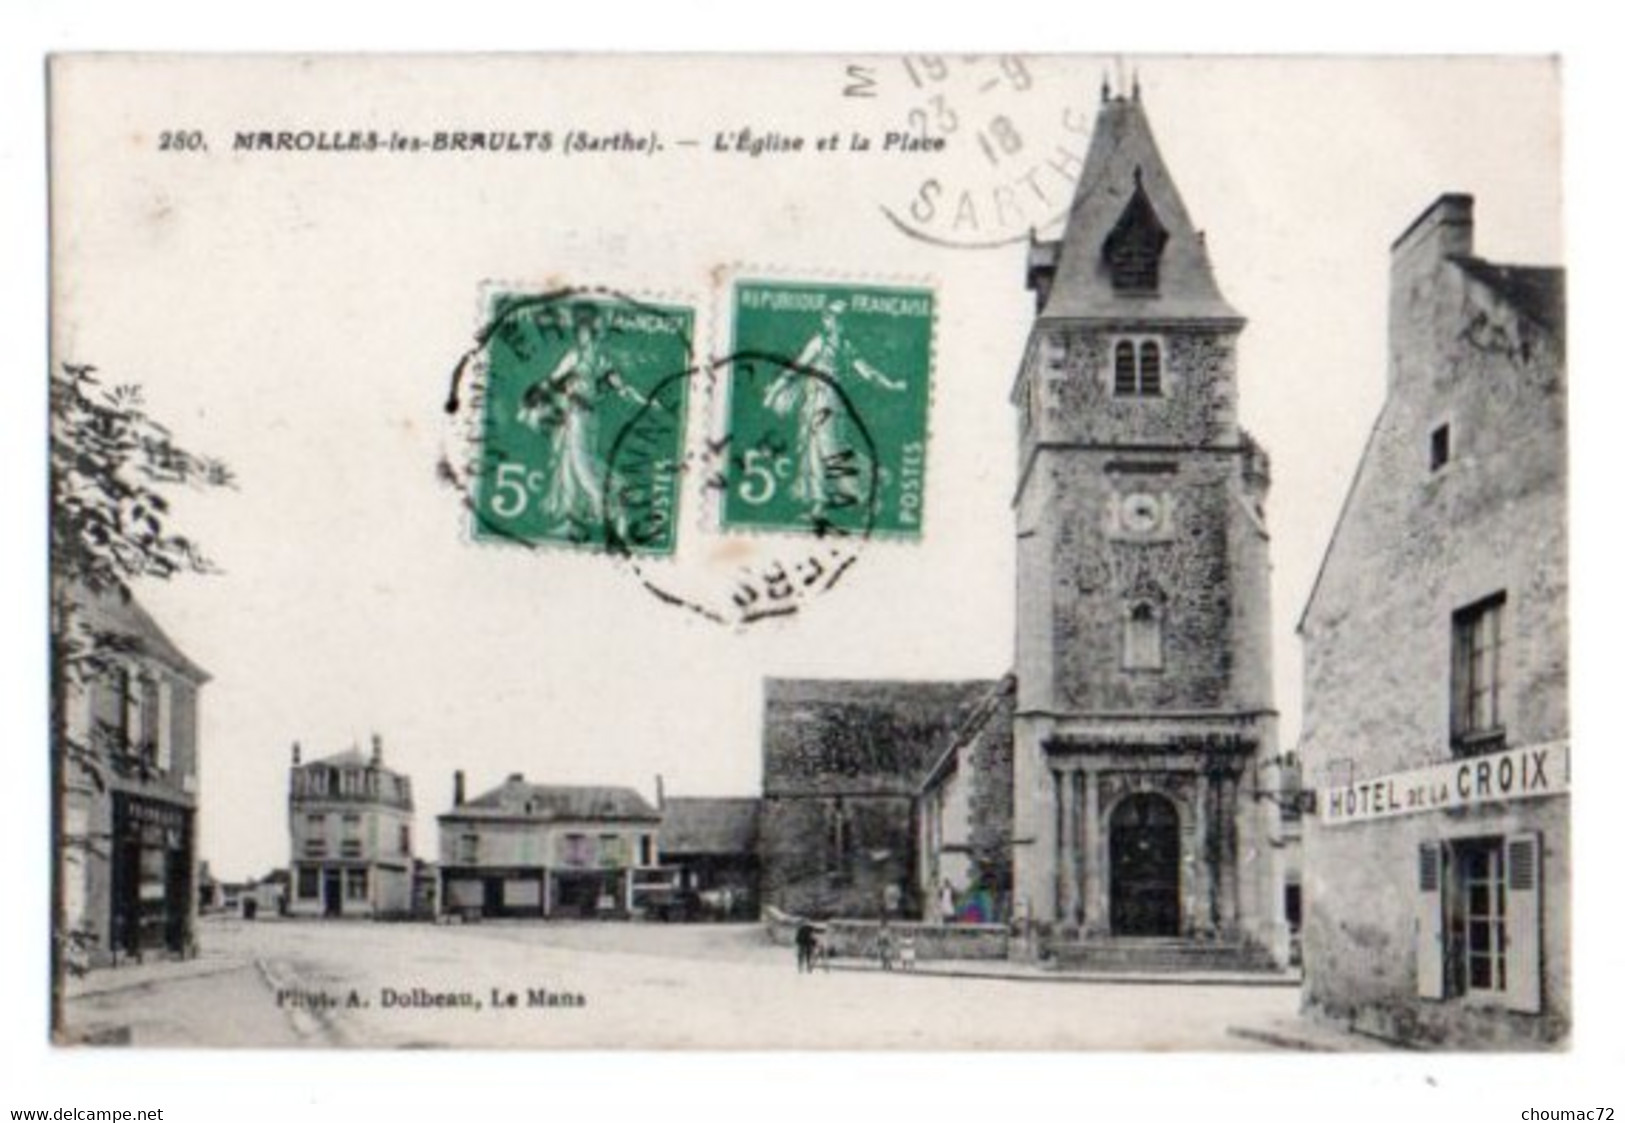 (72) 2287, Marolles Les Braults, Dolbeau 280, L'Eglise Et La Place - Marolles-les-Braults